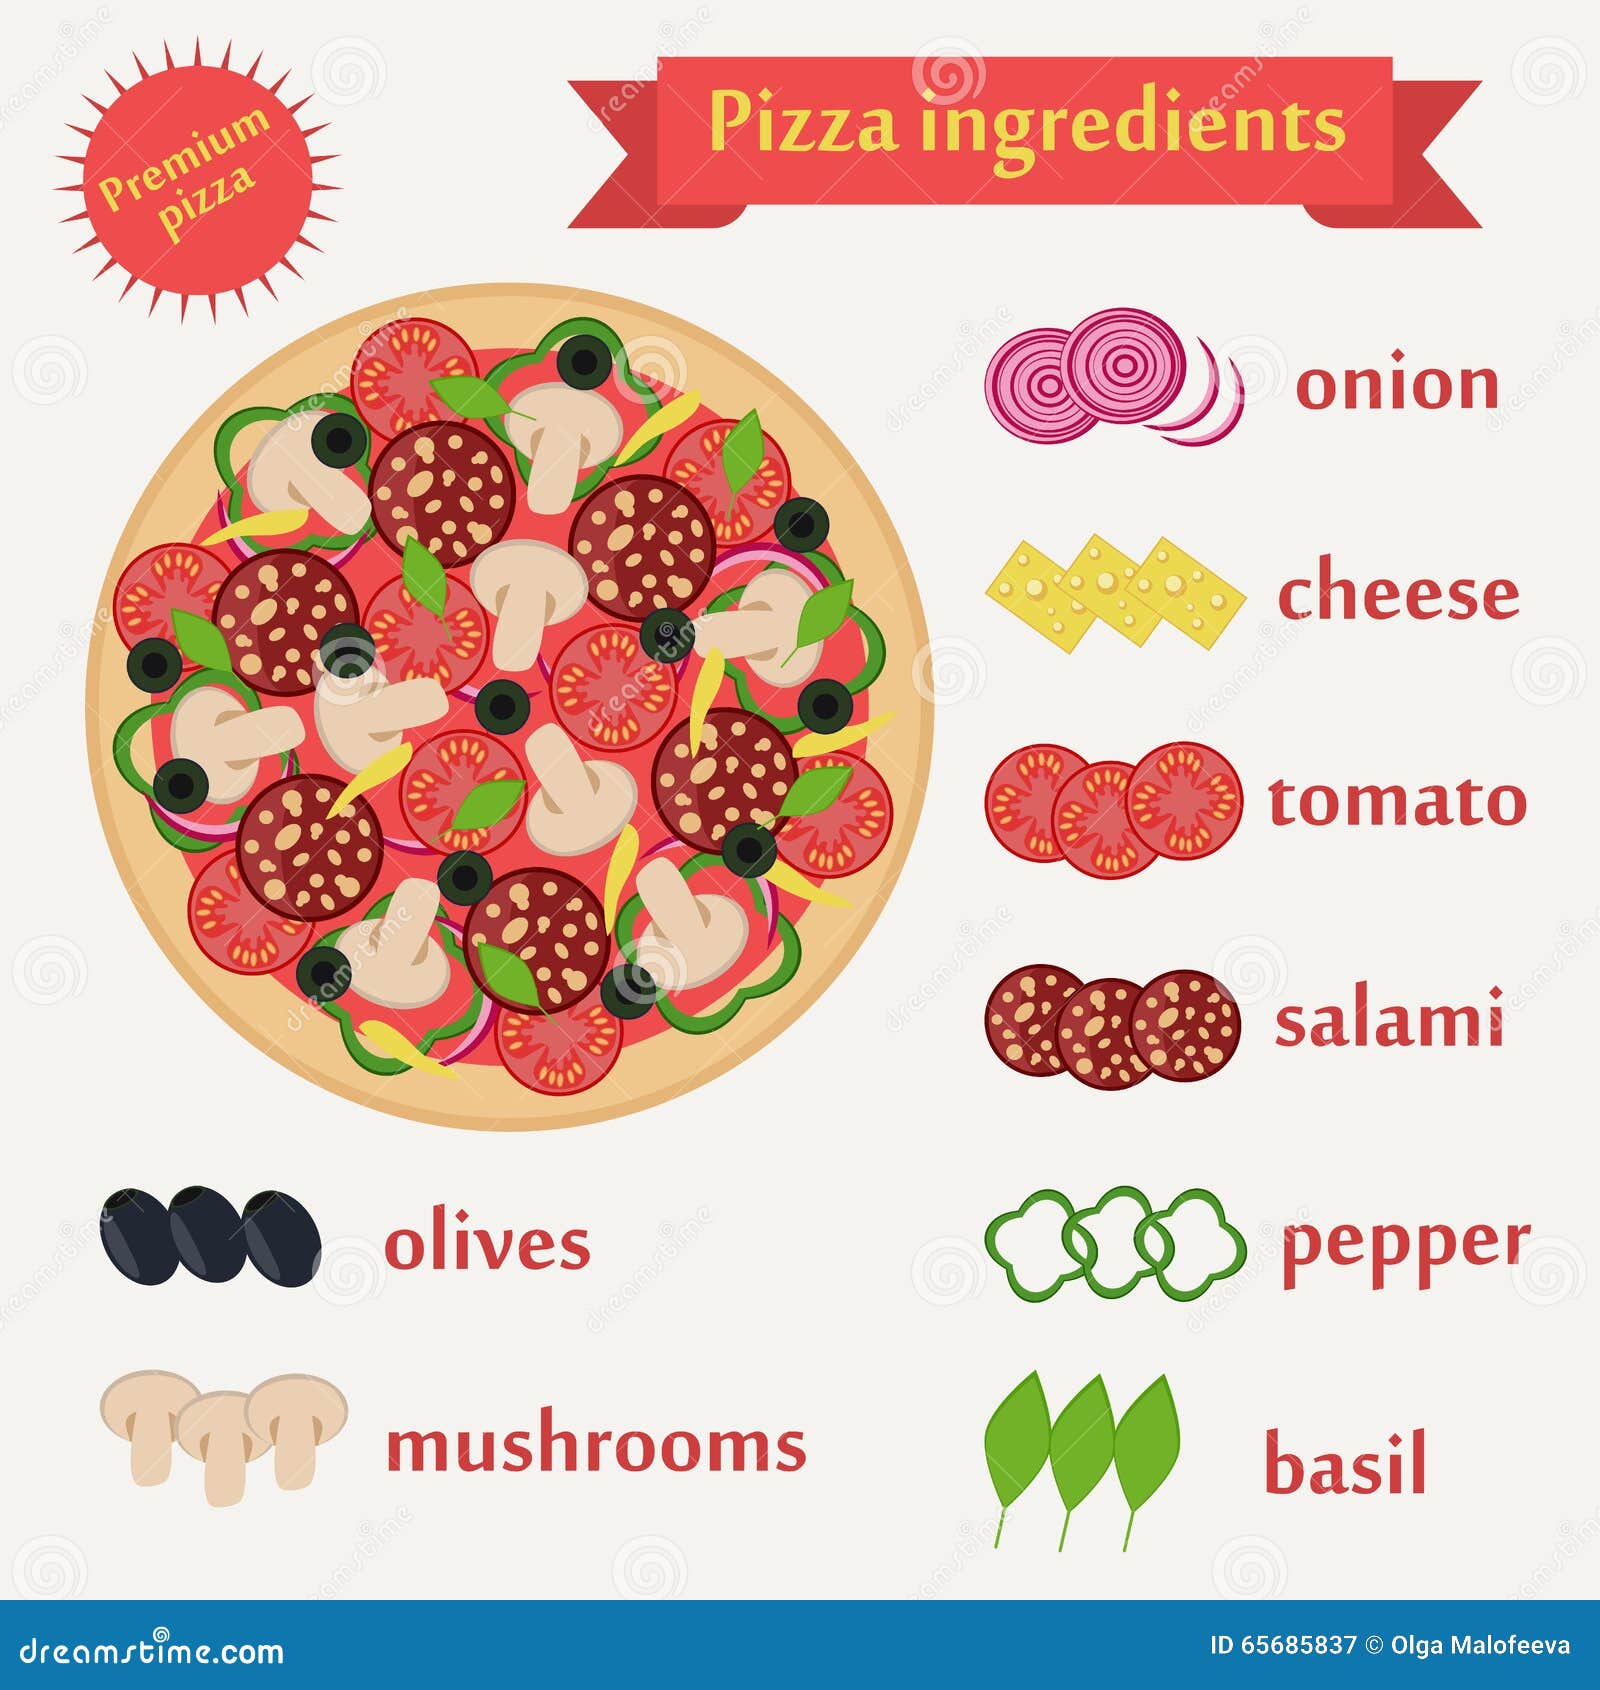 рецепты на английском пицца языке с переводом фото 2